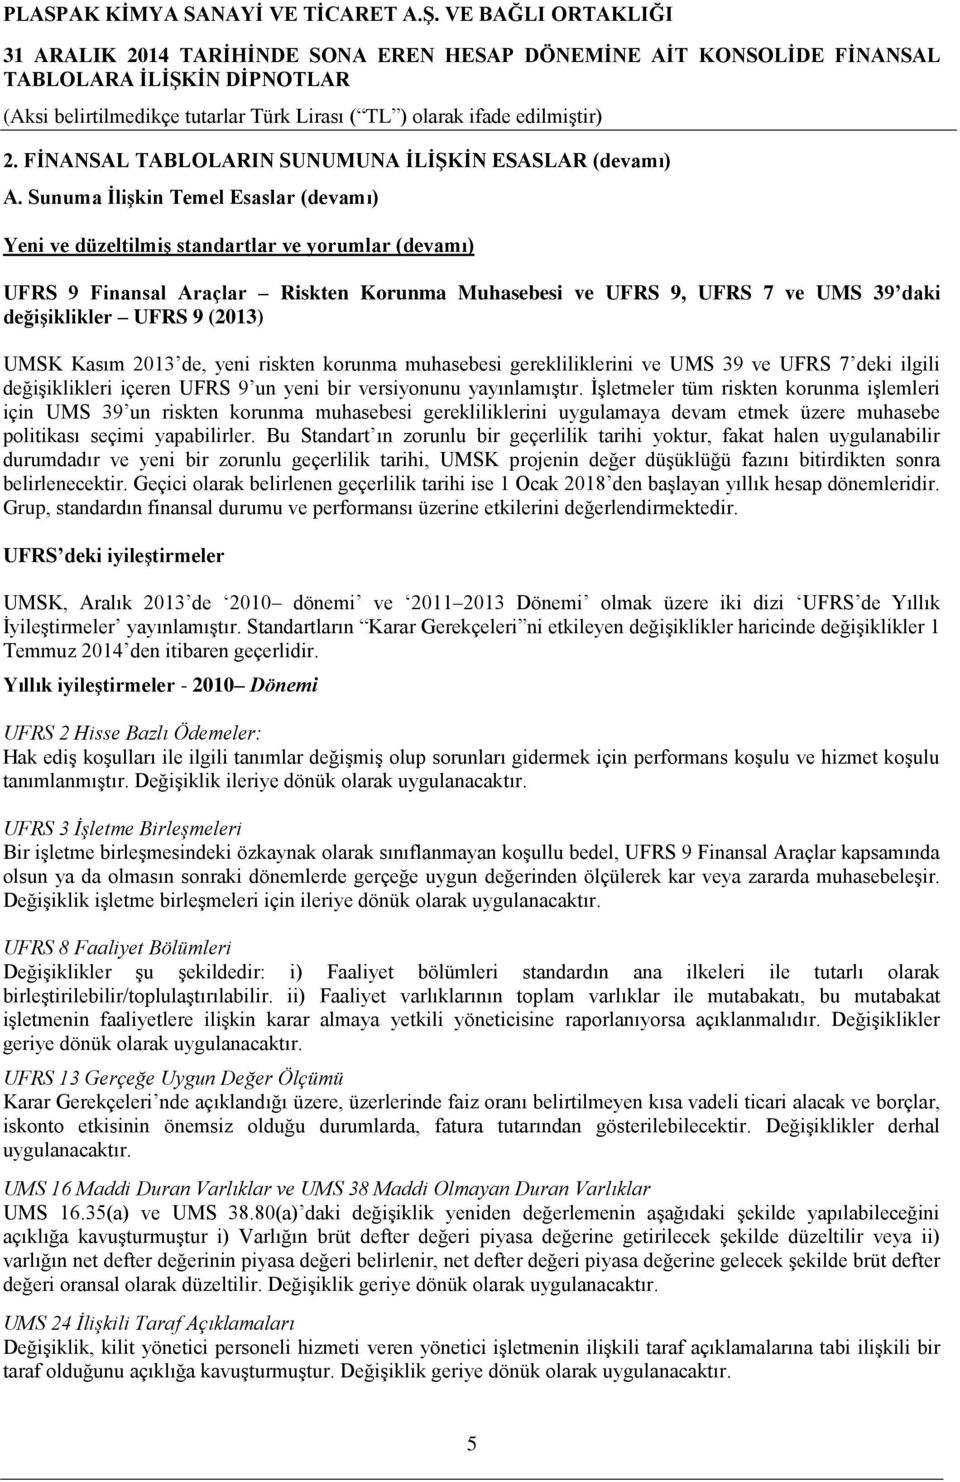 (2013) UMSK Kasım 2013 de, yeni riskten korunma muhasebesi gerekliliklerini ve UMS 39 ve UFRS 7 deki ilgili değişiklikleri içeren UFRS 9 un yeni bir versiyonunu yayınlamıştır.